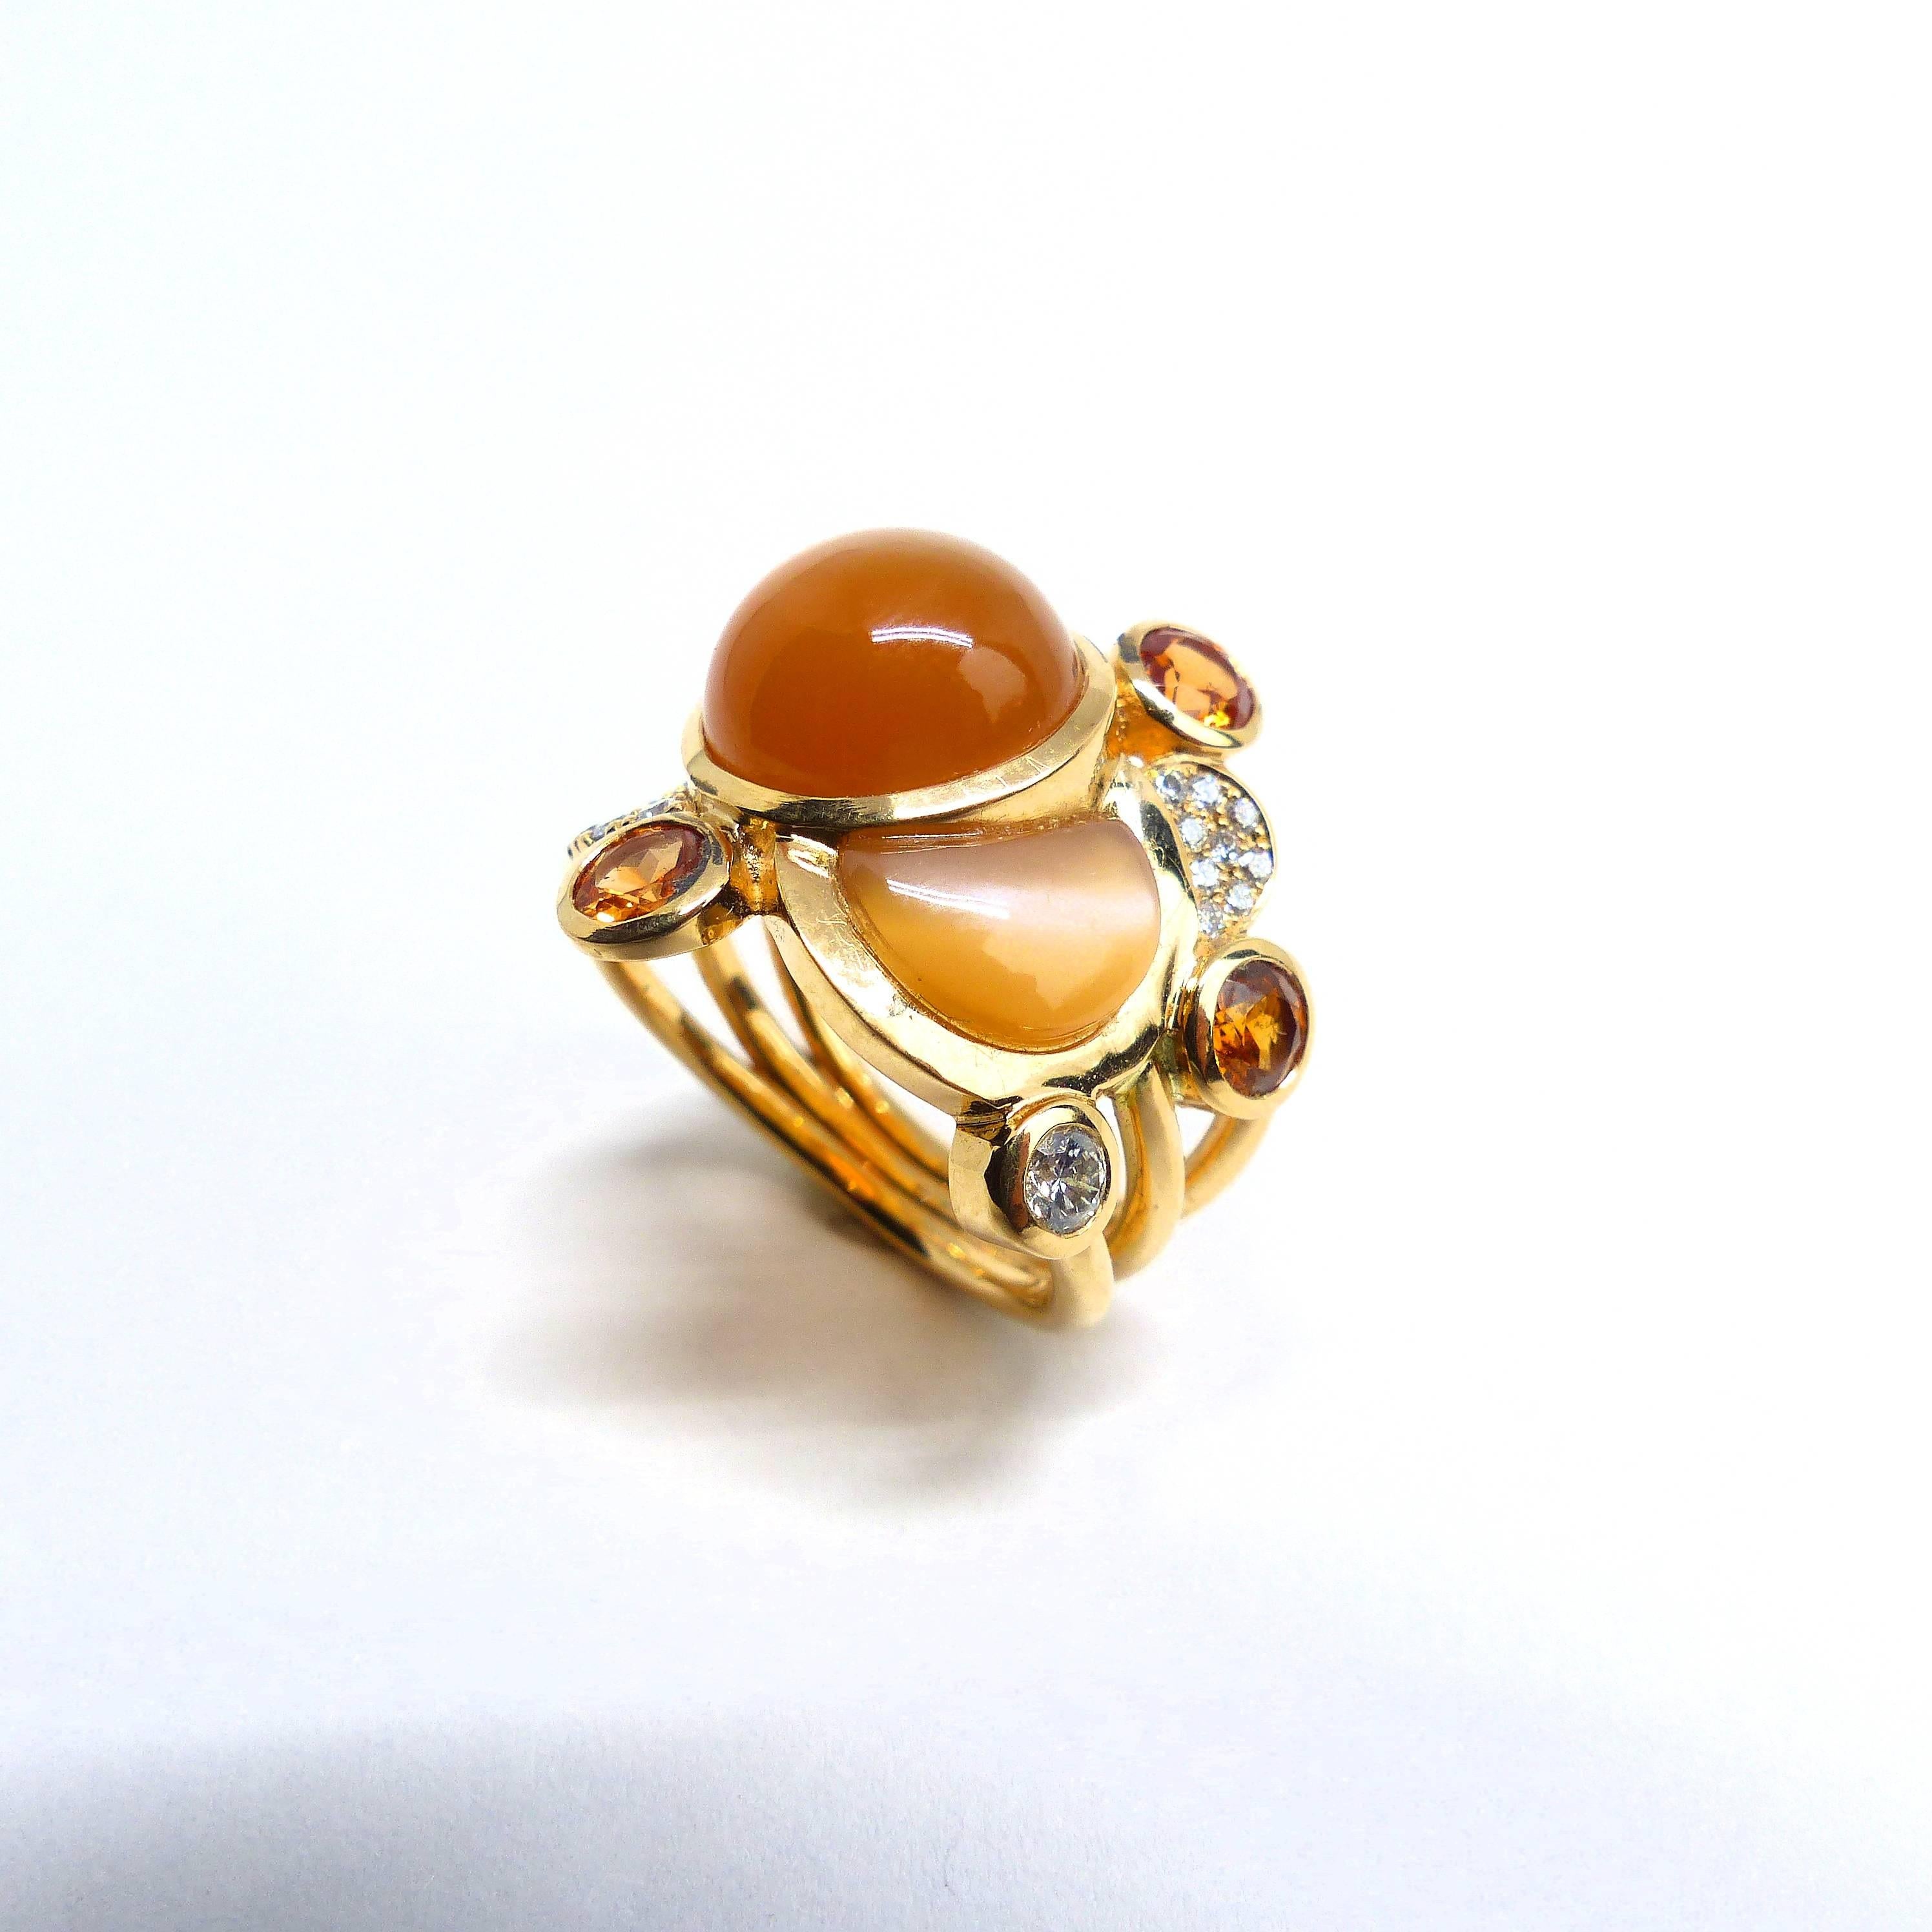 Thomas Leyser est réputé pour ses créations de bijoux contemporains utilisant des pierres précieuses fines. 

Cette bague en or rose 18k (9,52g) est sertie de 2x Cabouchons en pierre de lune orange (6,82ct) et de 3x Grenats mandarins (facettés,